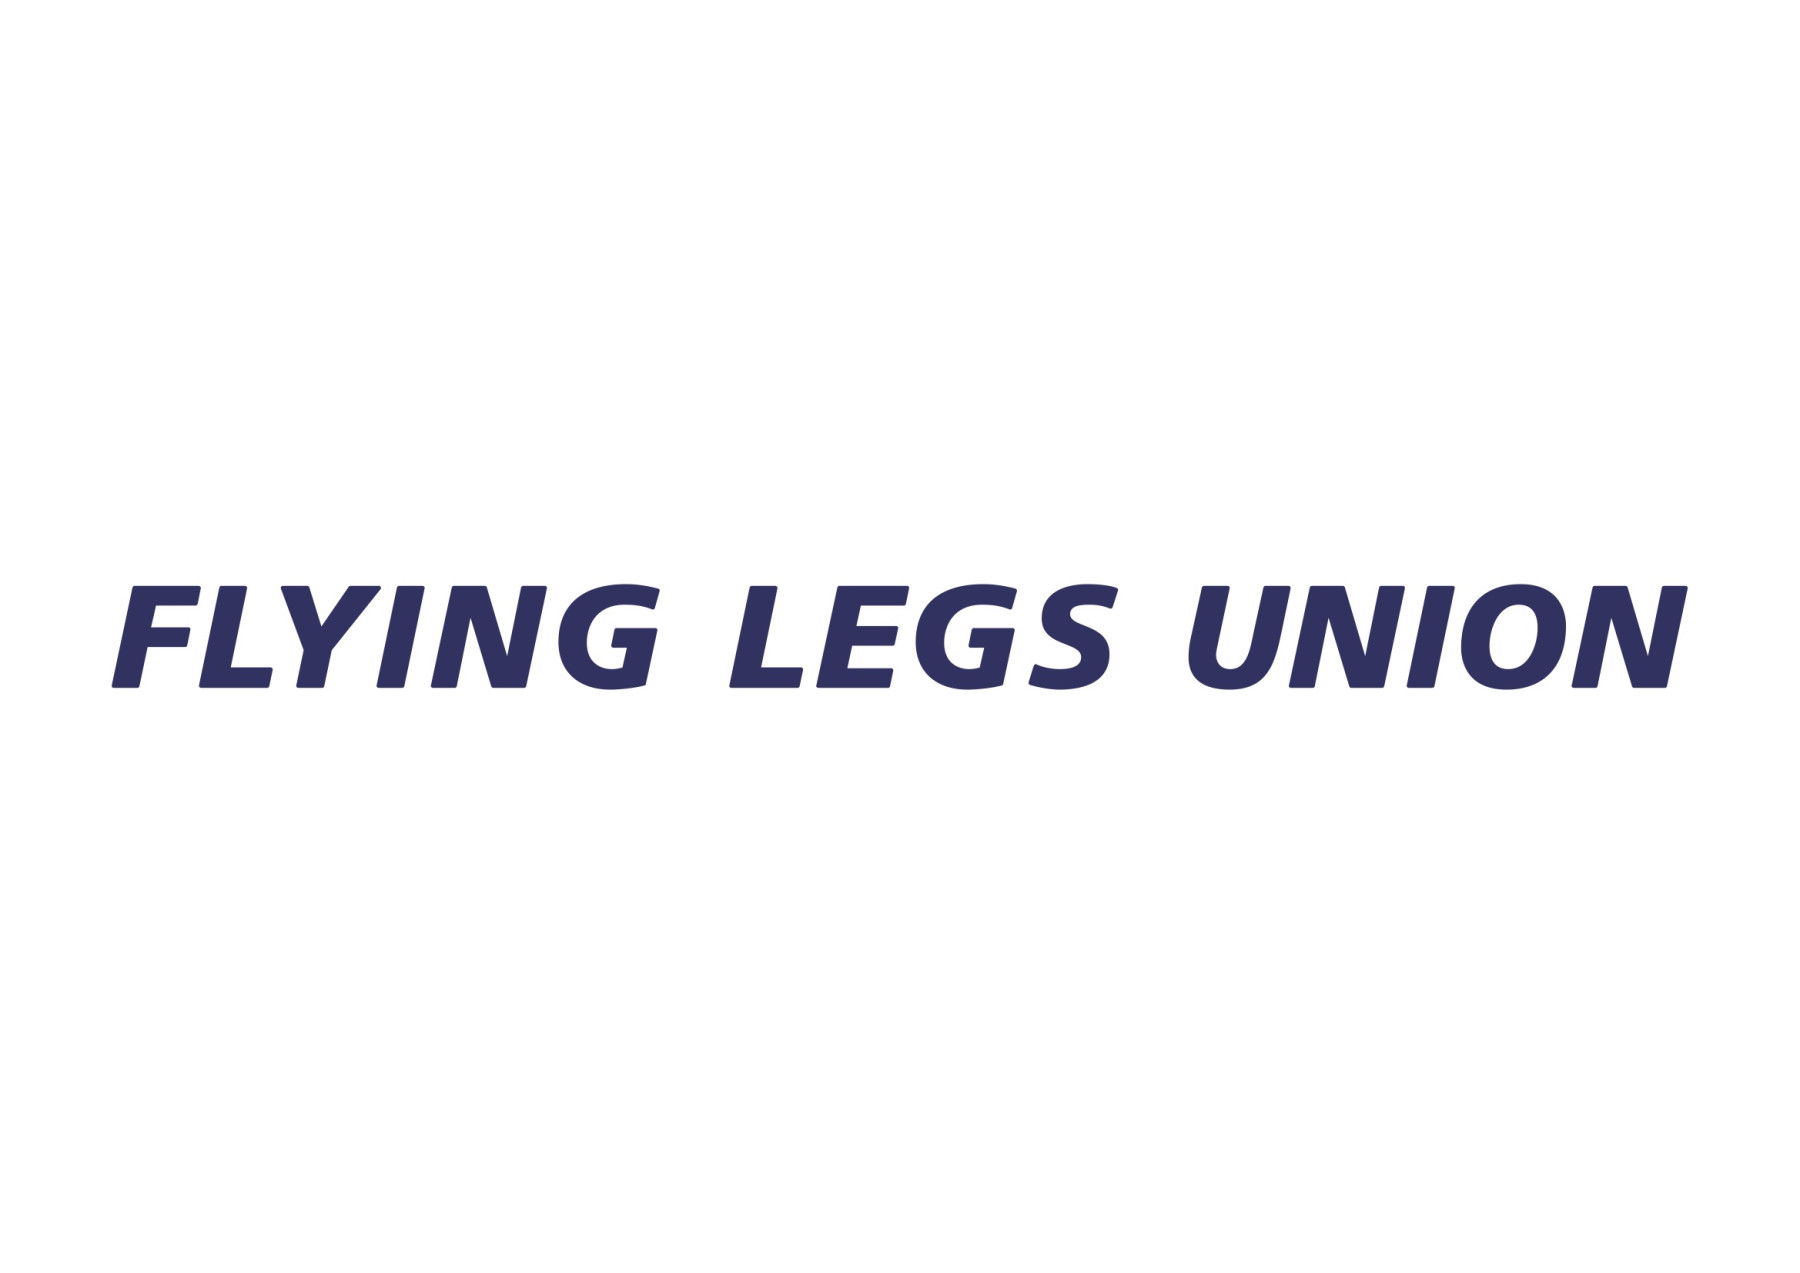 FLYING LEGS UNION LLC